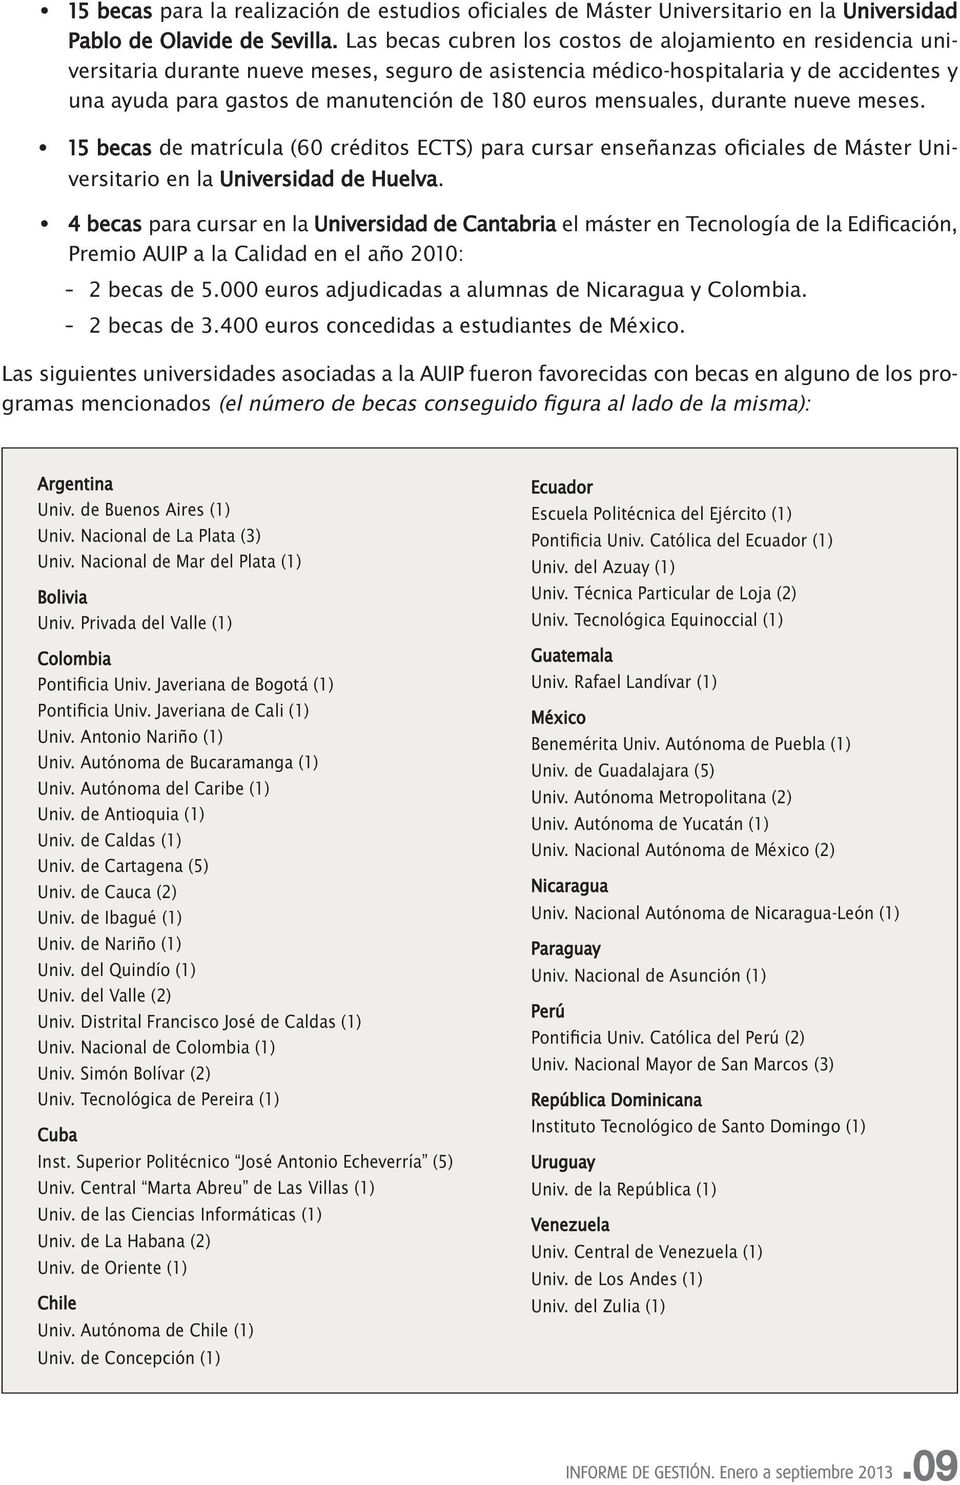 euros mensuales, durante nueve meses. 15 becas de matrícula (60 créditos ECTS) para cursar enseñanzas oficiales de Máster Universitario en la Universidad de Huelva.